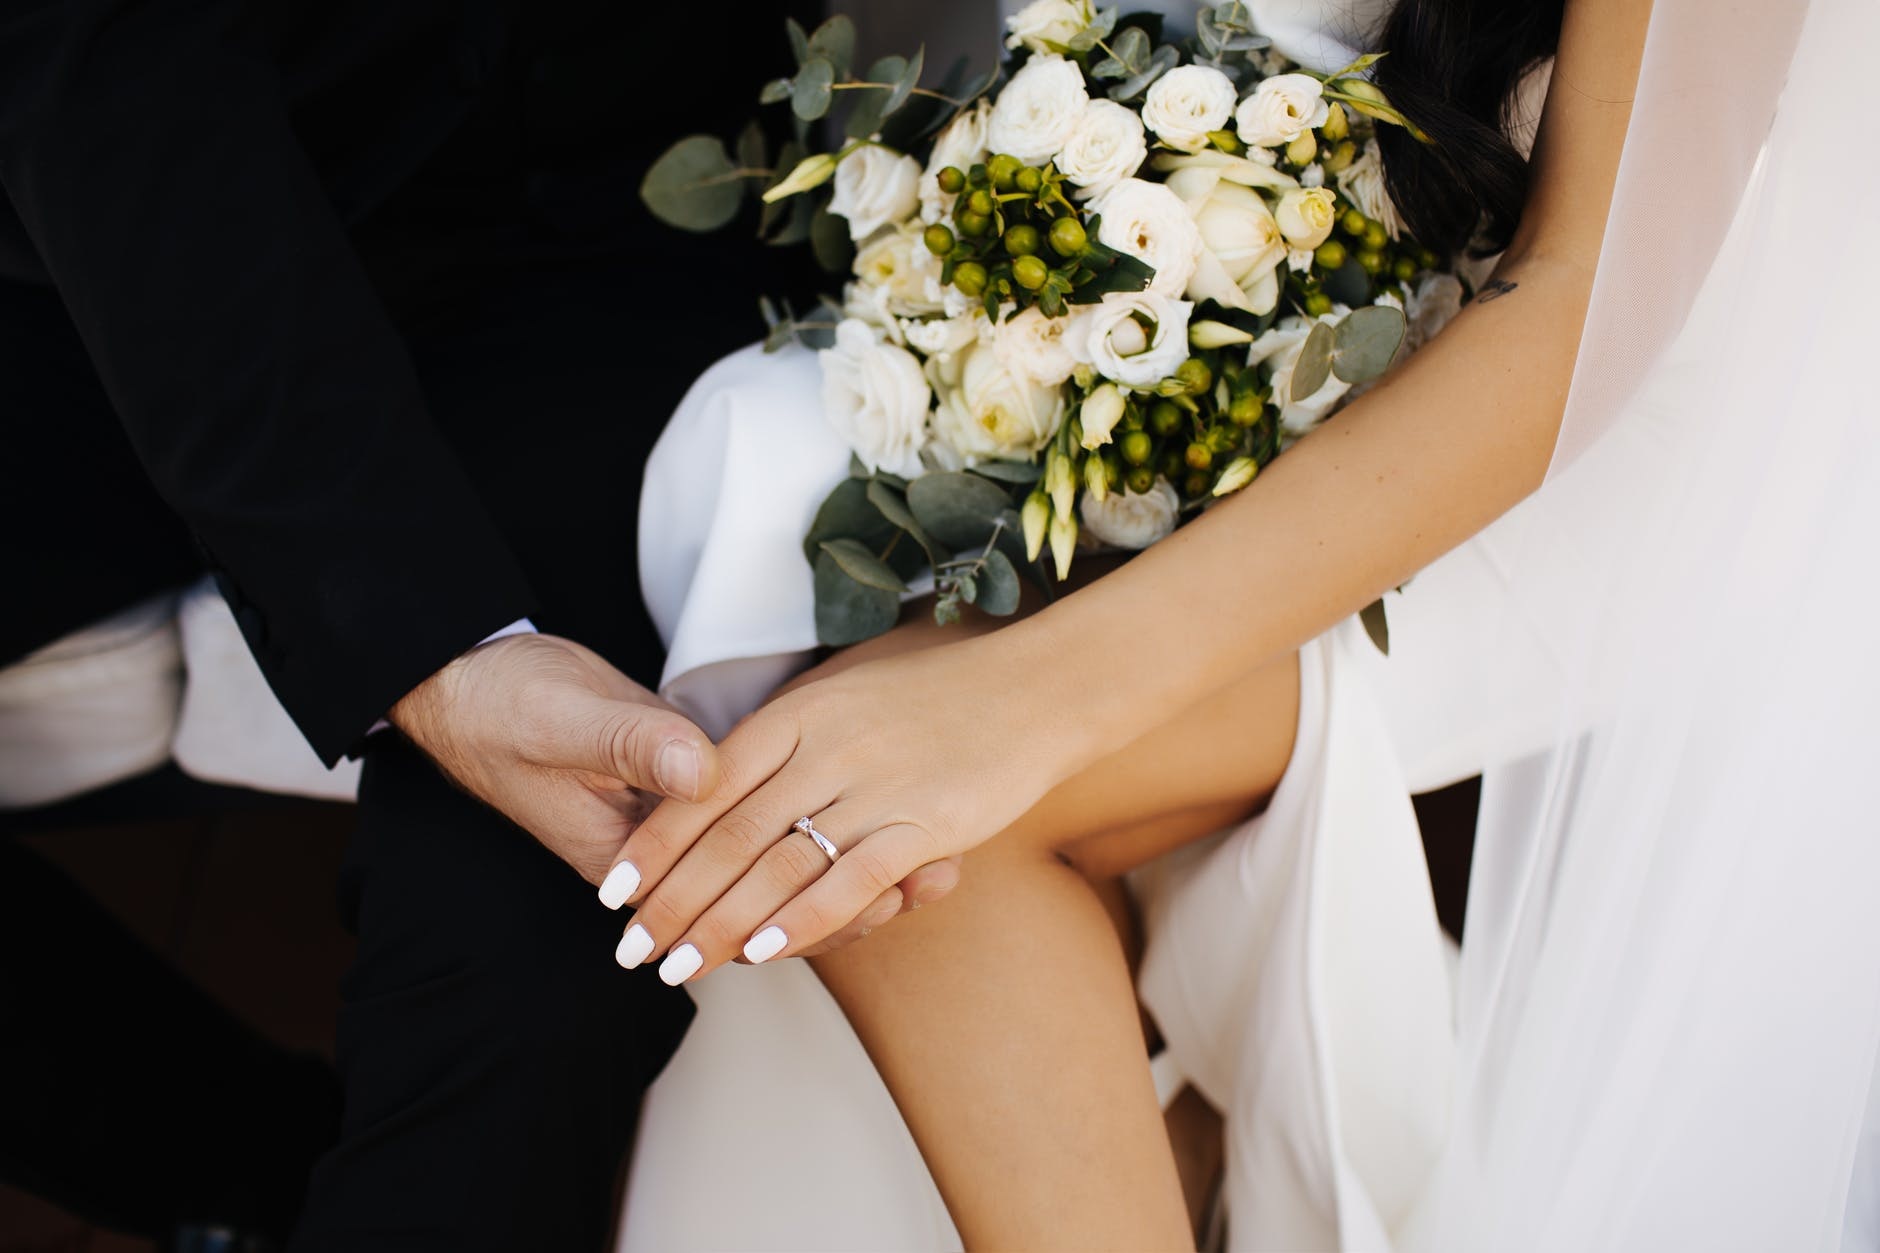 Chọn nhẫn cưới hợp phong thủy: Kiểu dáng hợp mệnh, cách đeo chuẩn